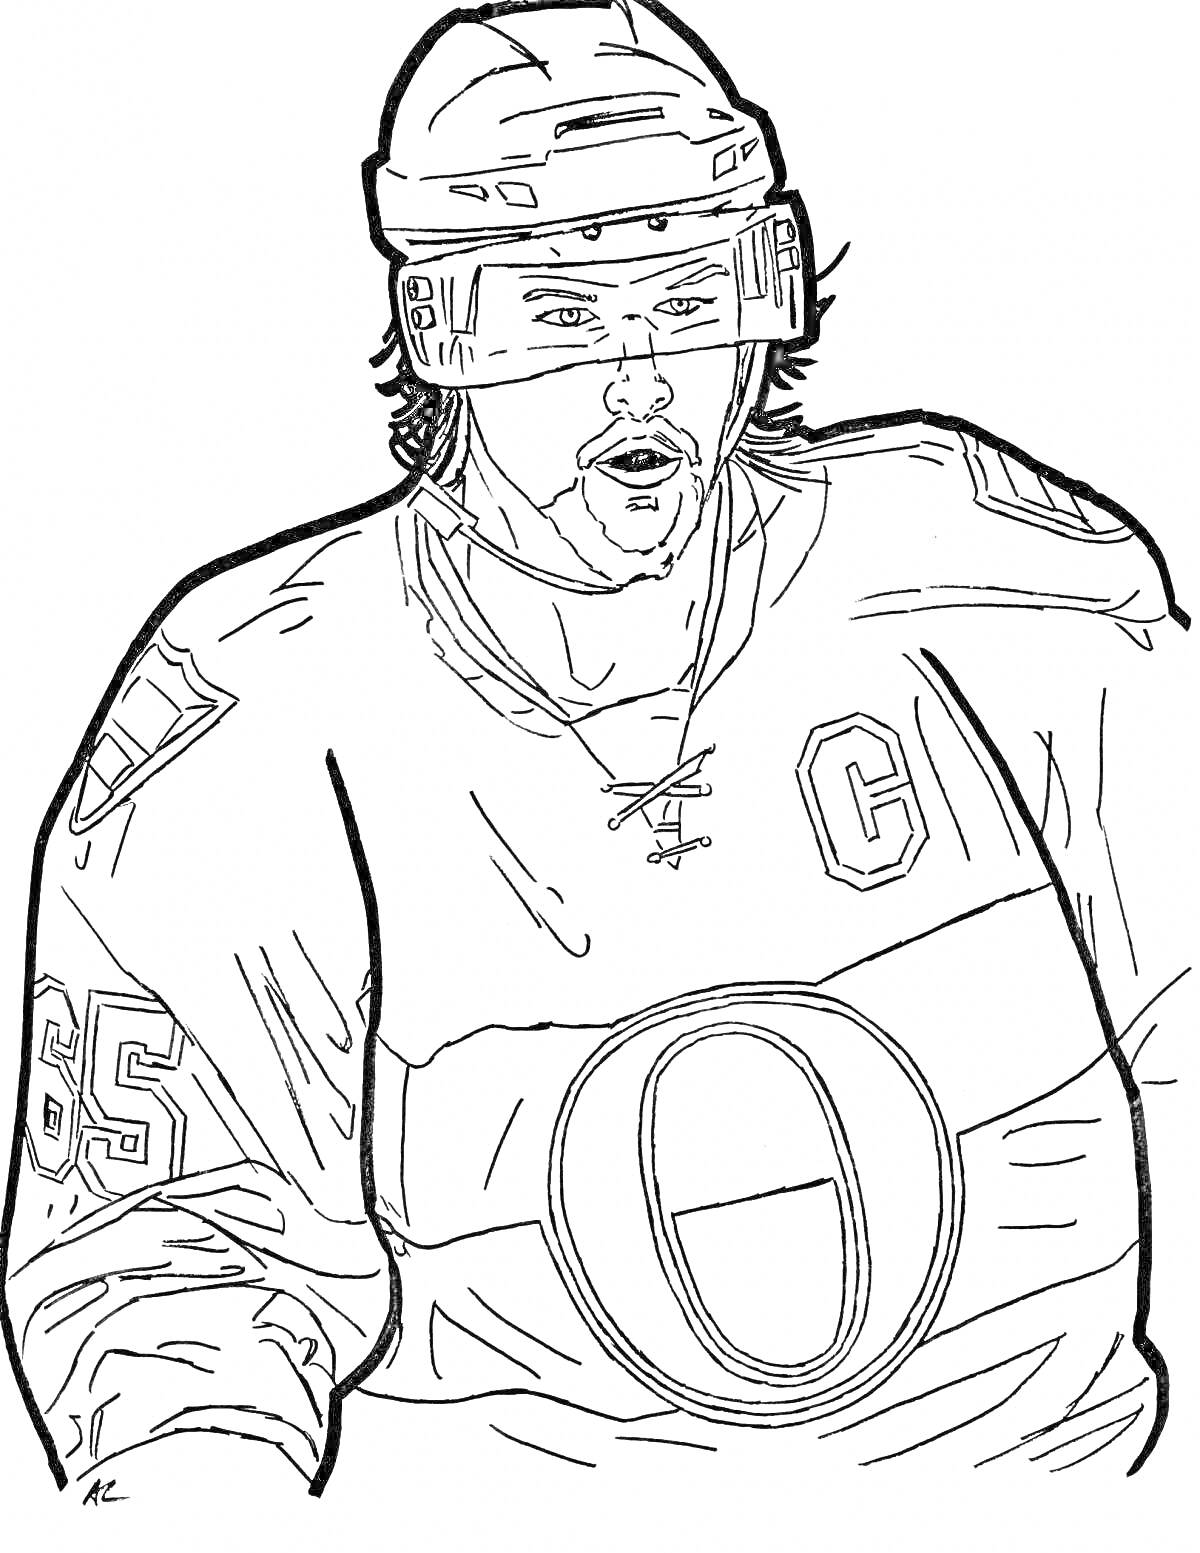 Раскраска Хоккеист в шлеме и форме с буквой 